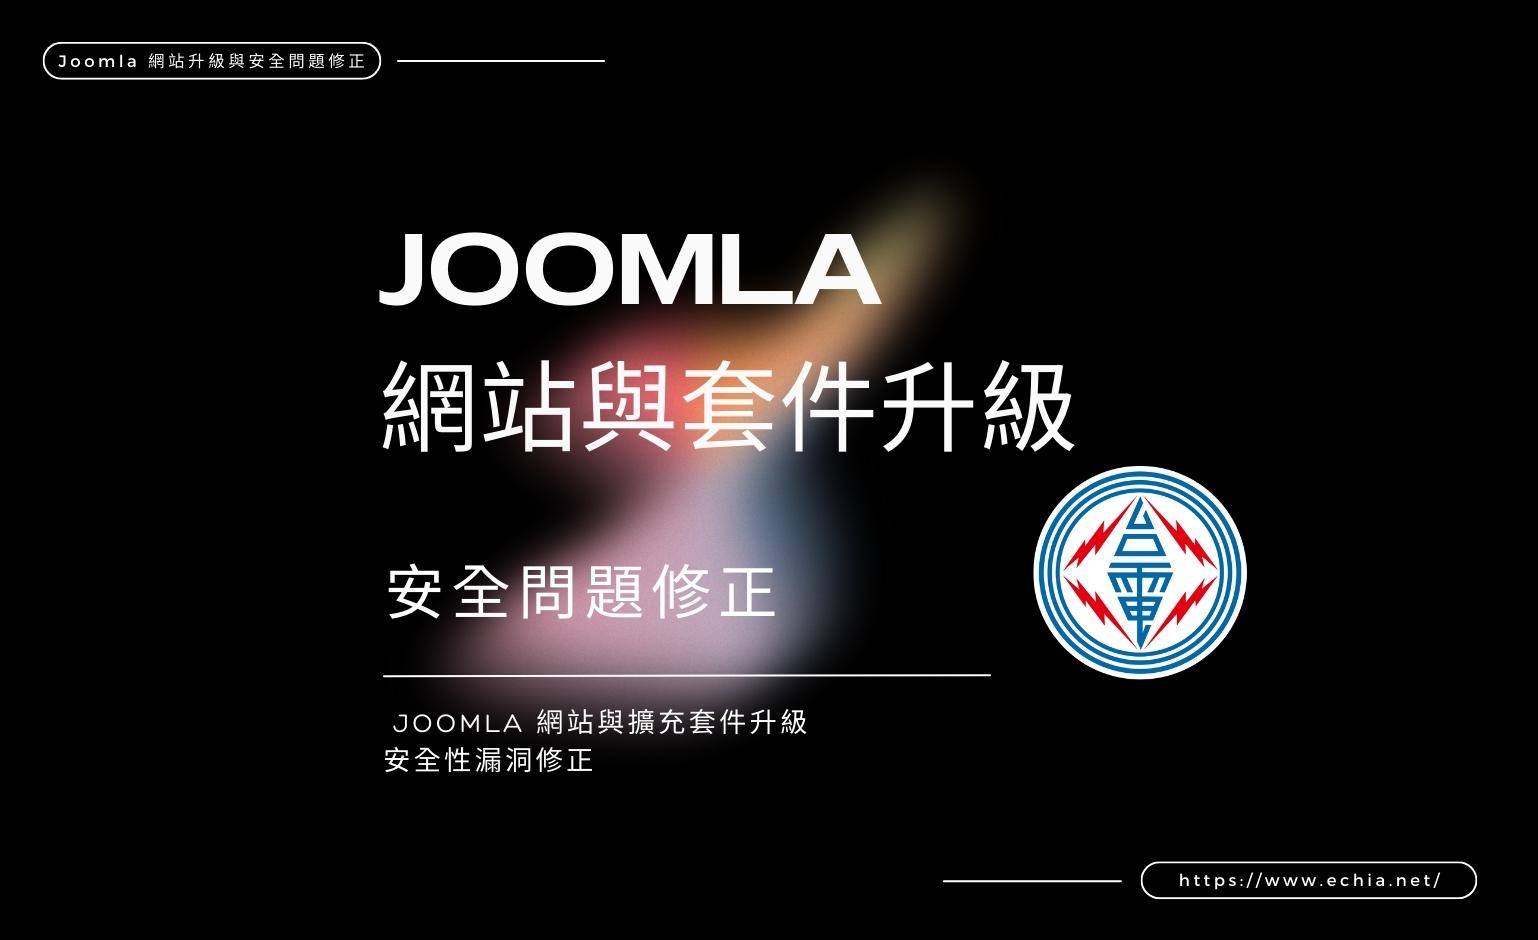 台灣電力公司 Joomla 網站升級與安全問題修正